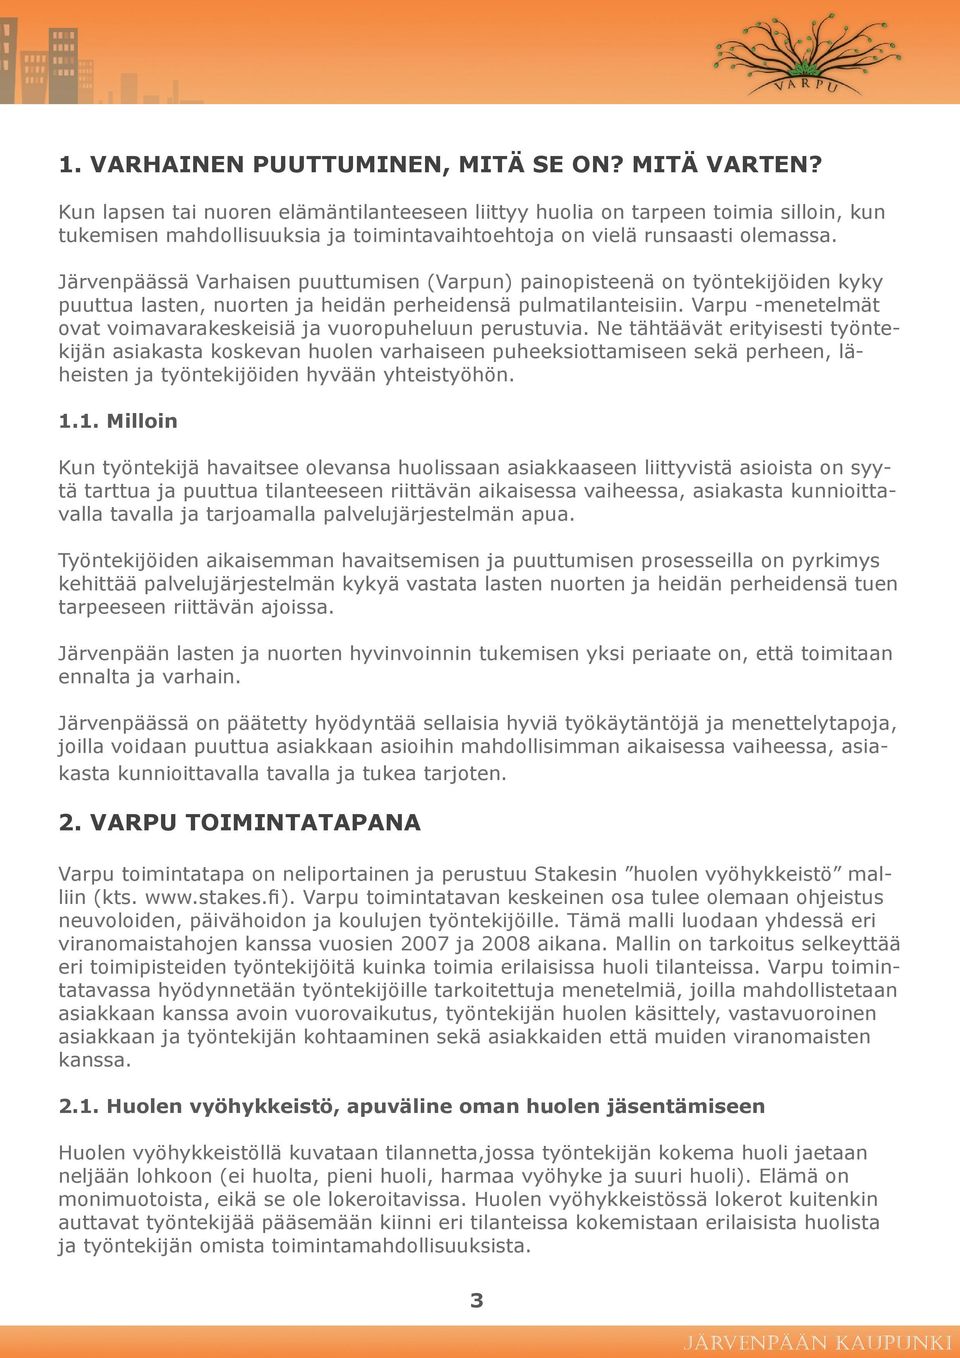 Järvenpäässä Varhaisen puuttumisen (Varpun) painopisteenä on työntekijöiden kyky puuttua lasten, nuorten ja heidän perheidensä pulmatilanteisiin.